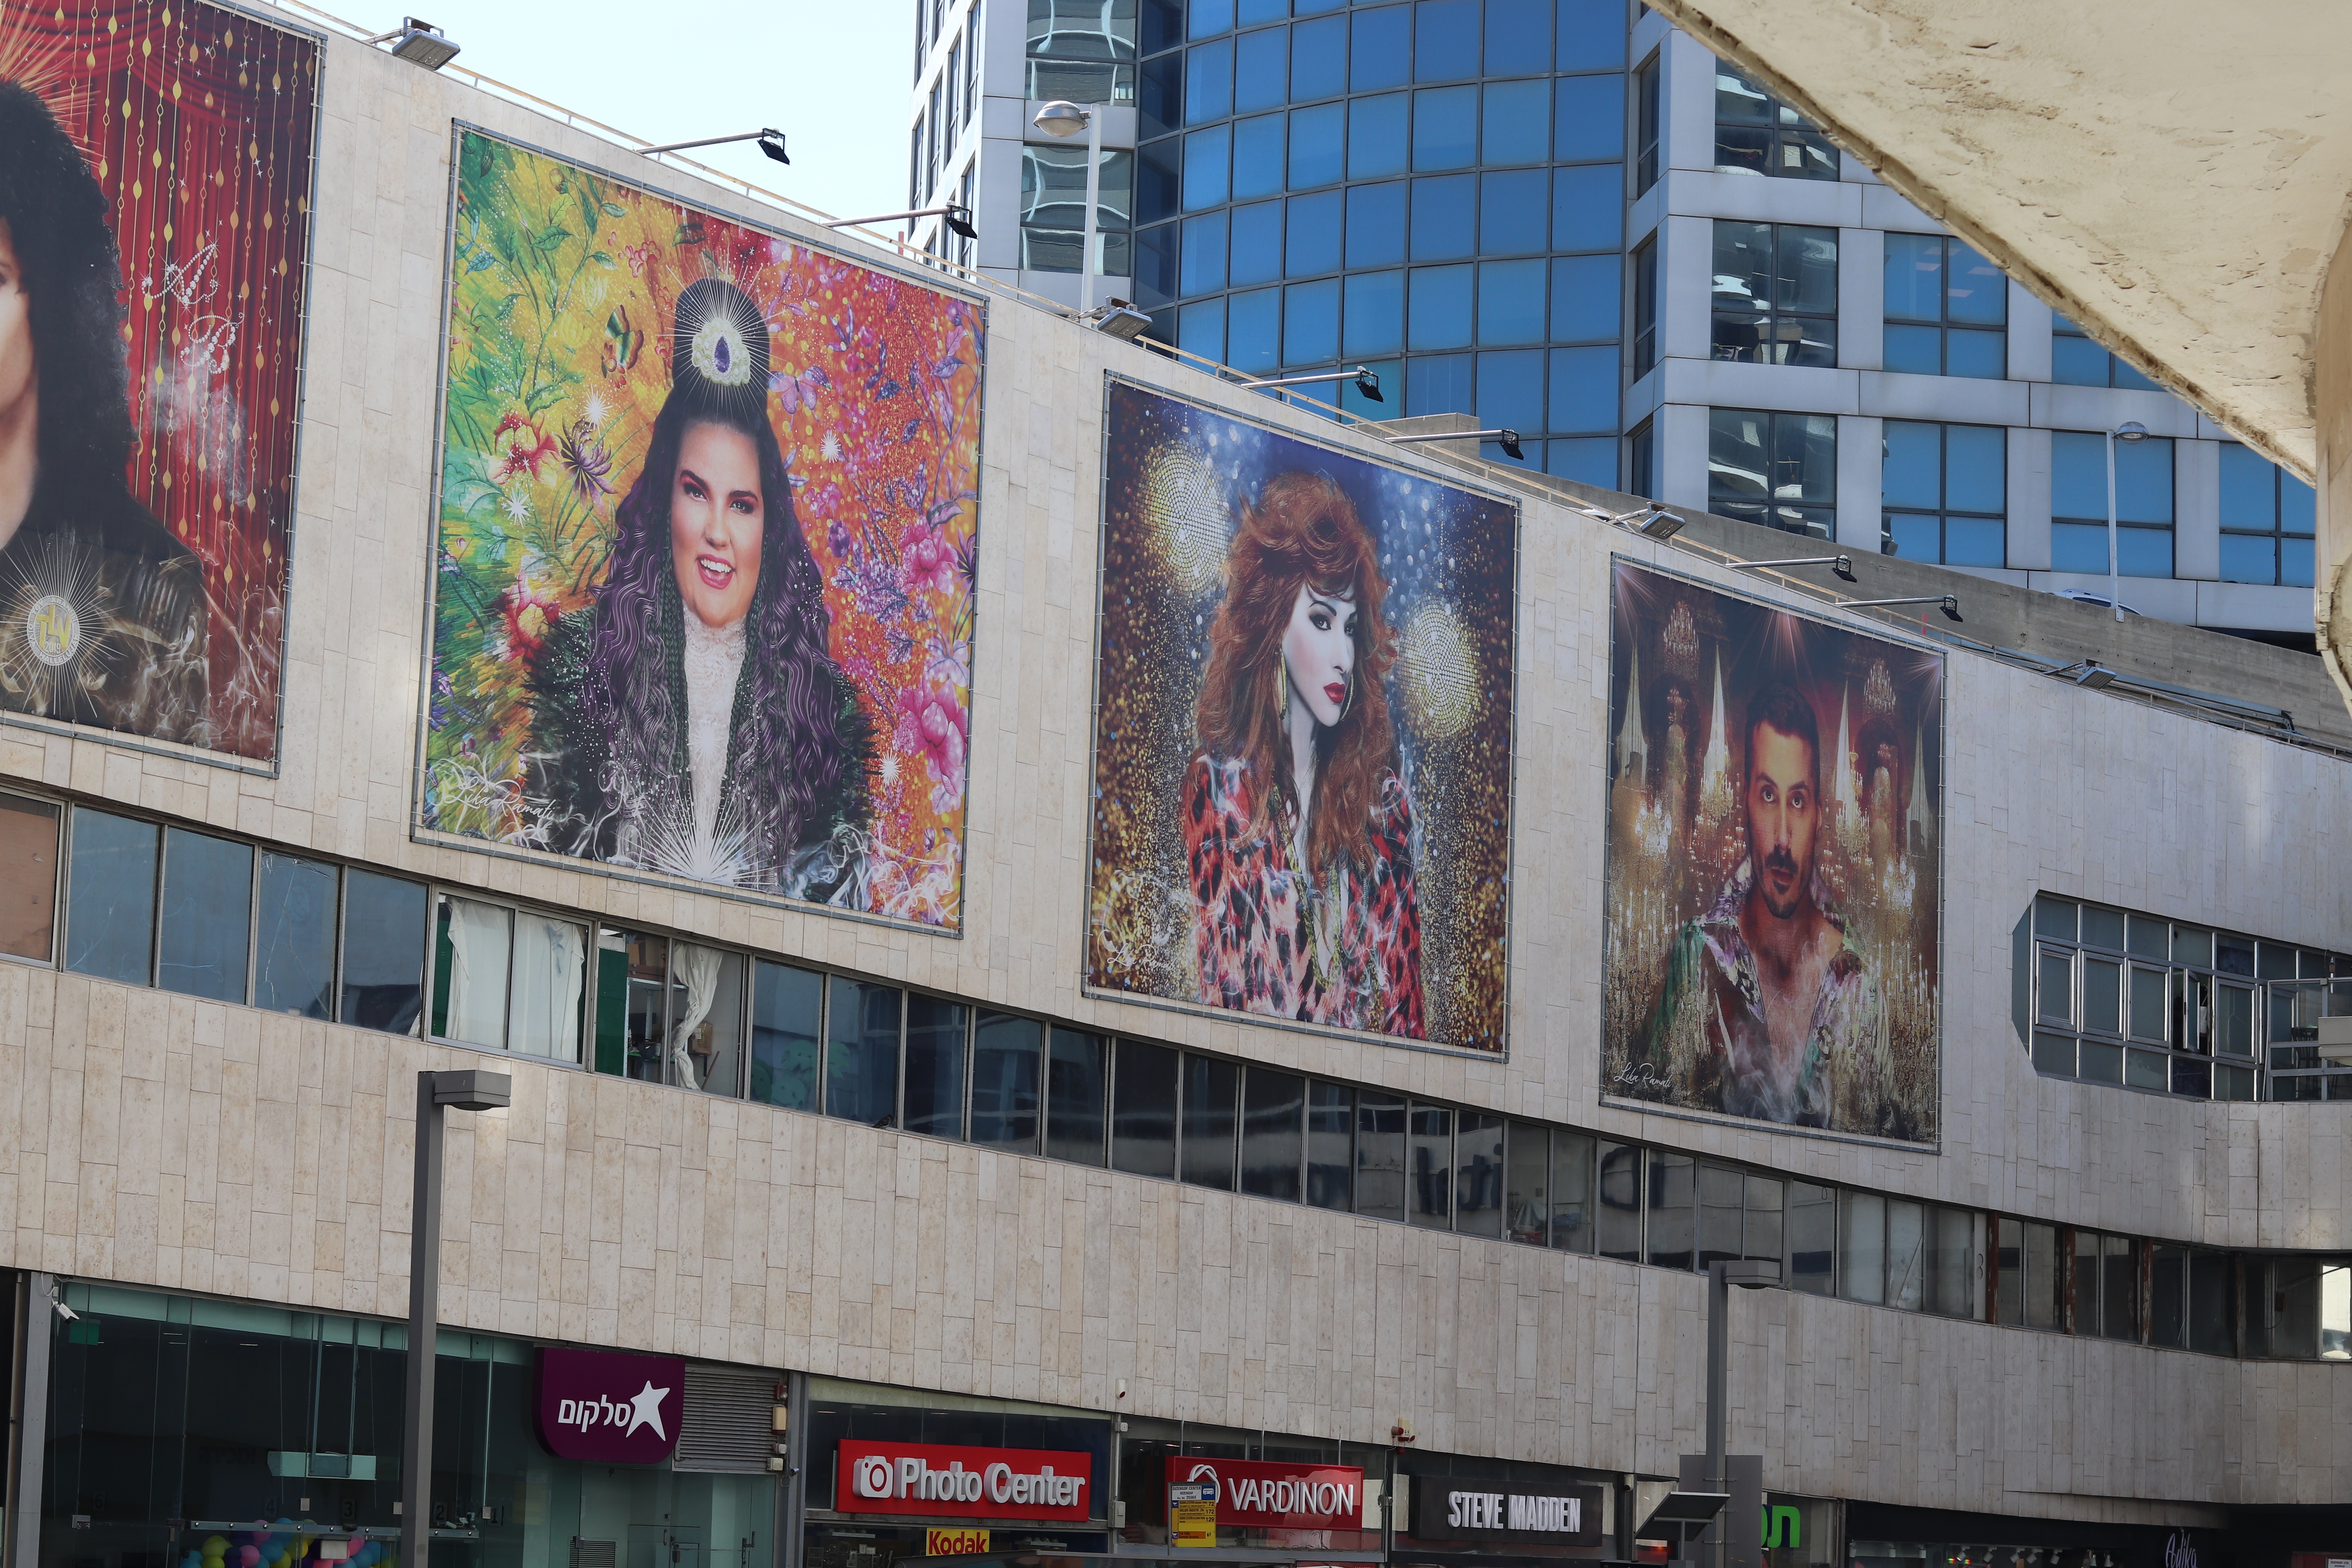 Public art celebrating Israel's Eurovision legacy